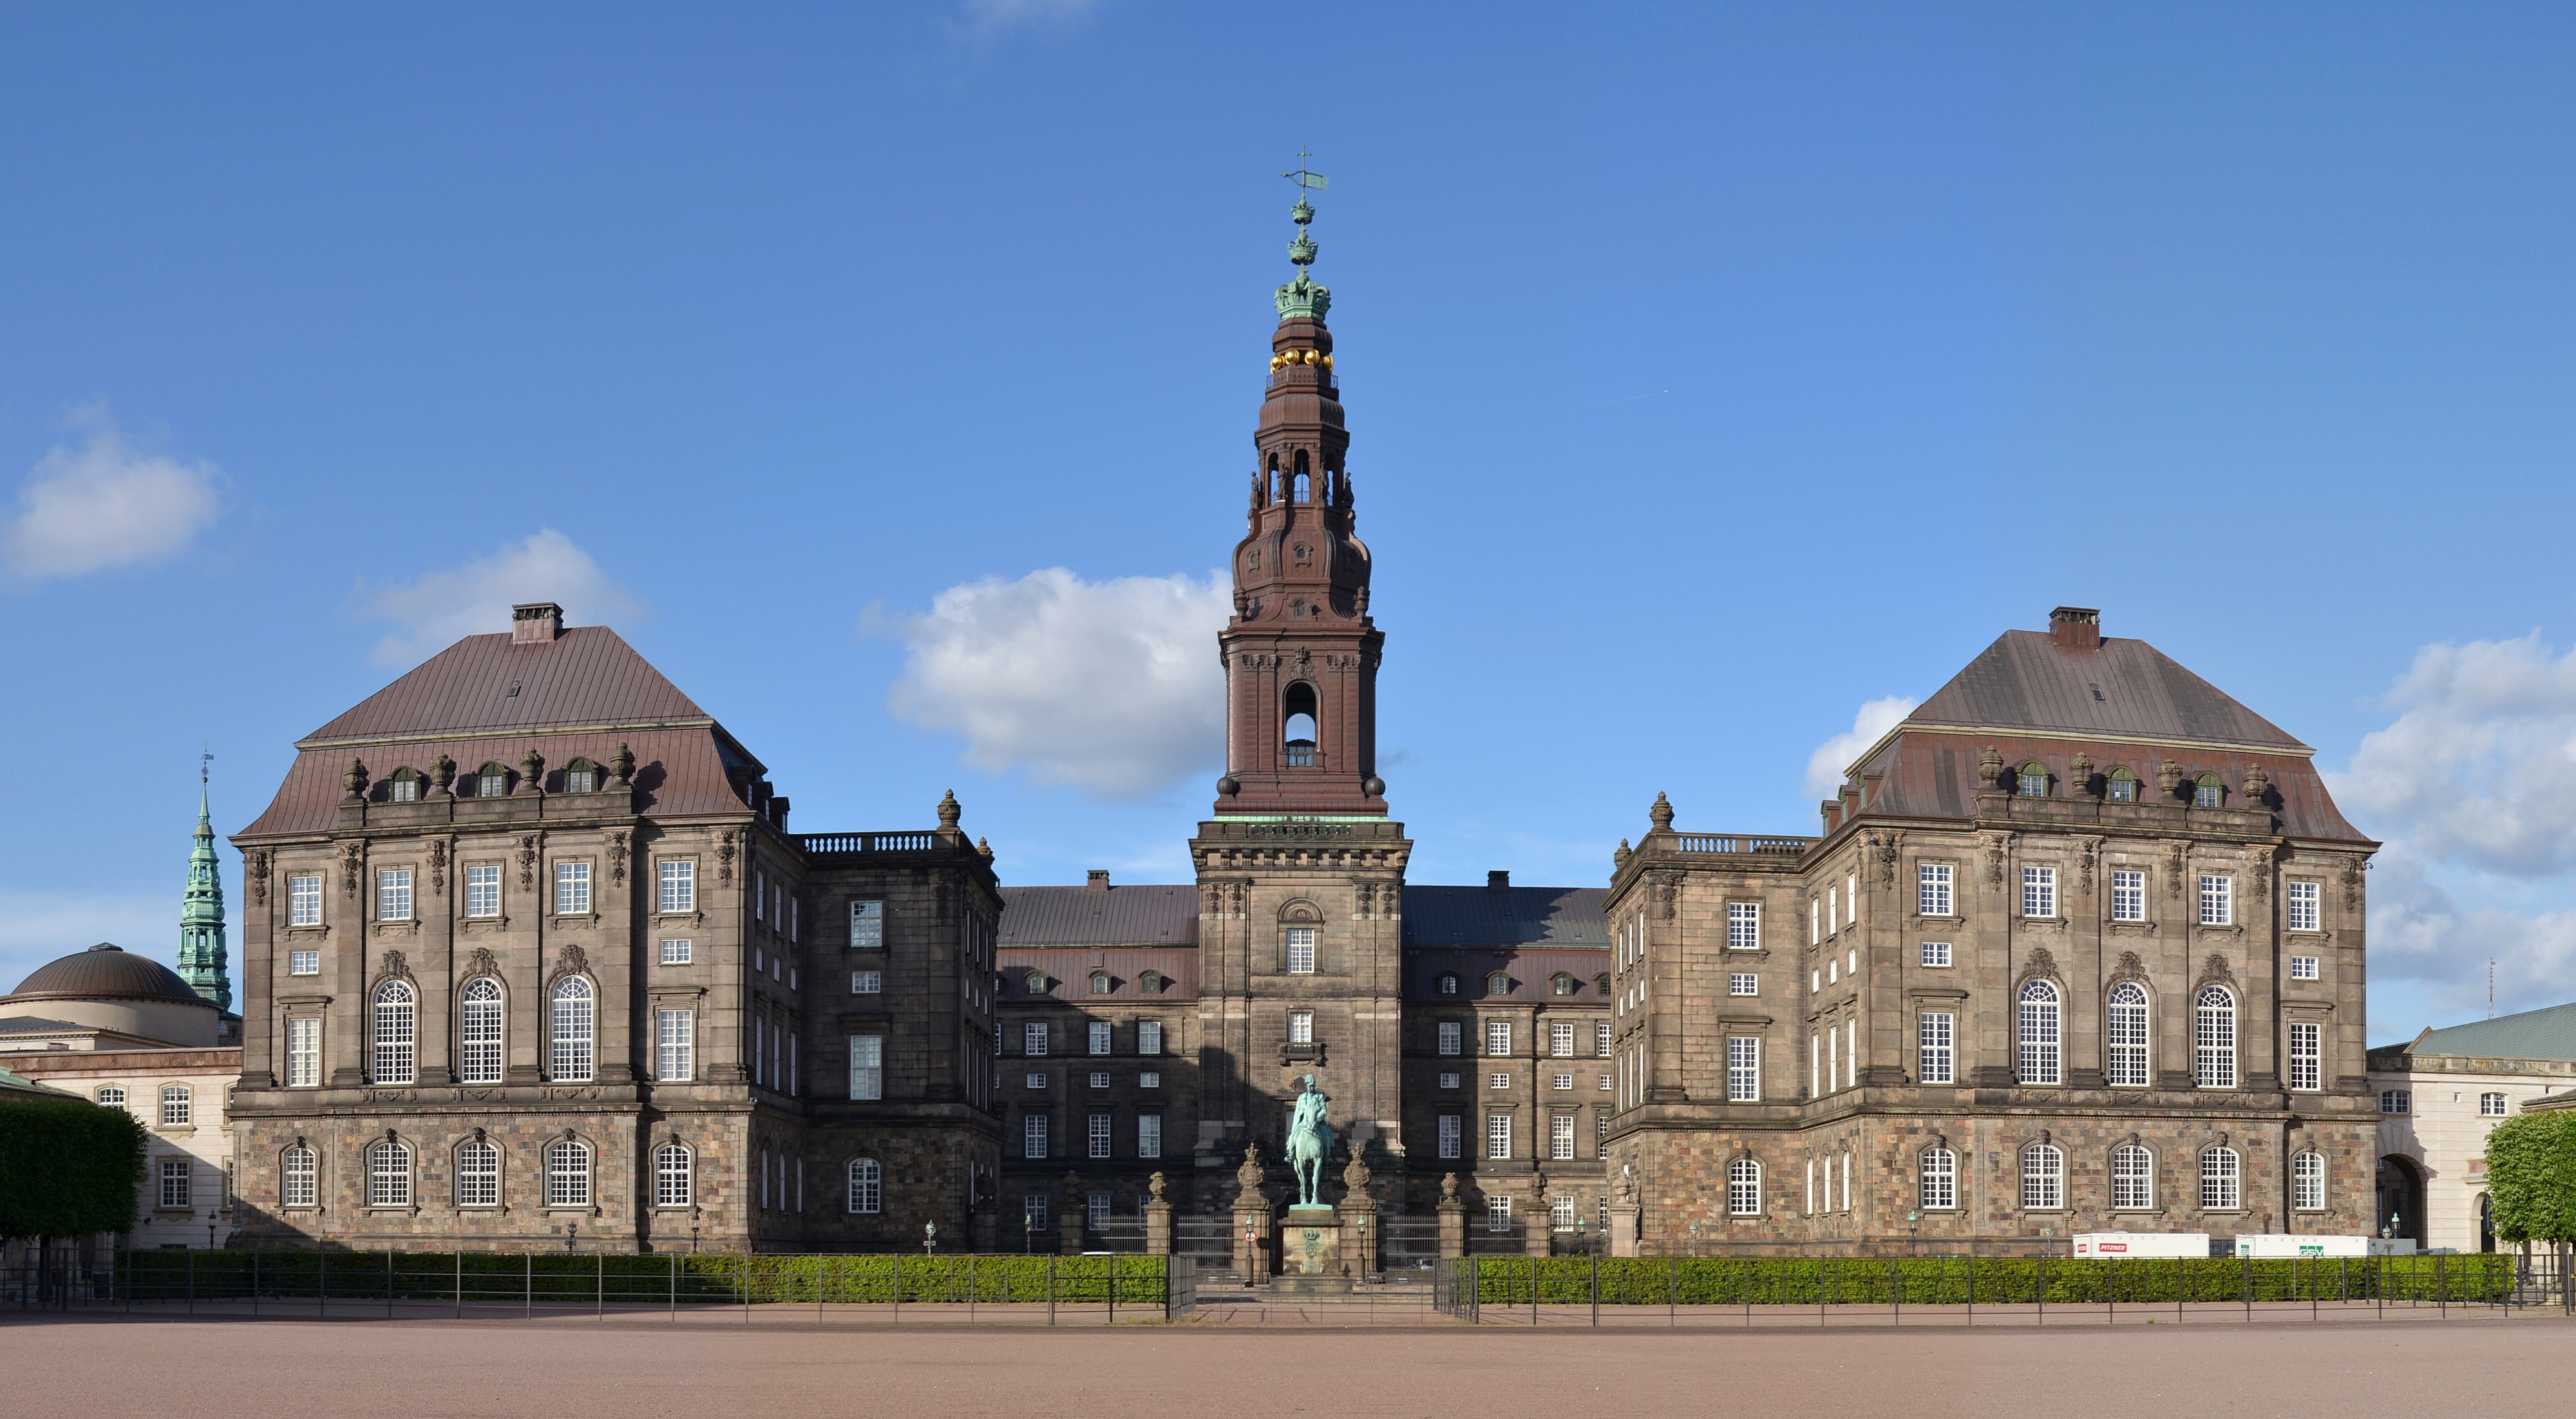 Christiansborg Palace, Copenhagen (by Pudelek)